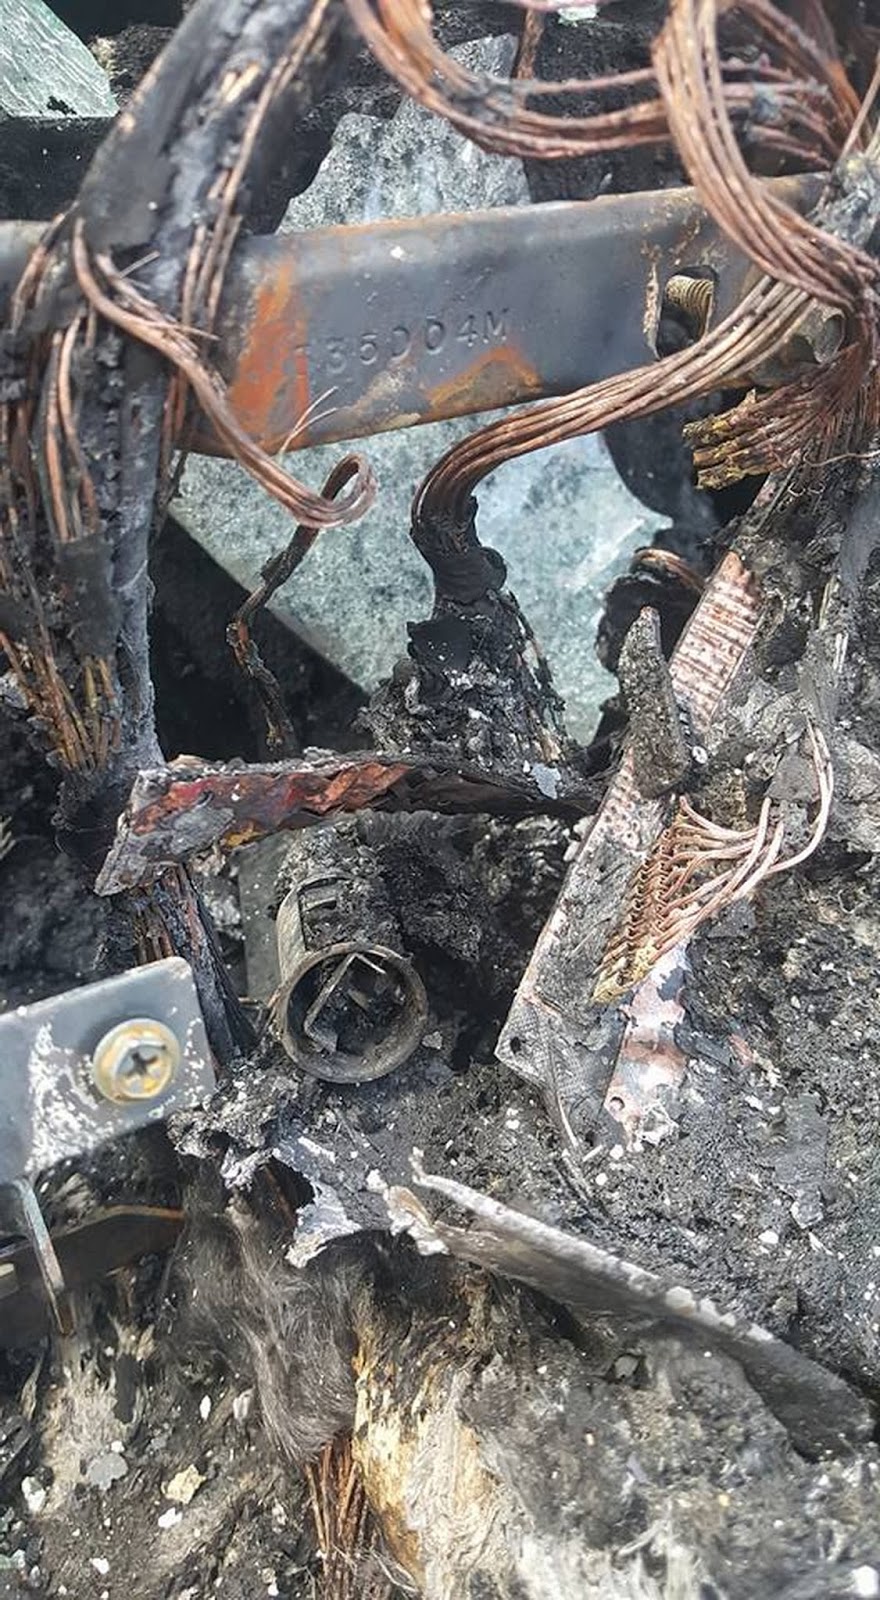 Jeep a fuoco a causa di una possibile esplosione della batteria del Samsung Galaxy Note 7